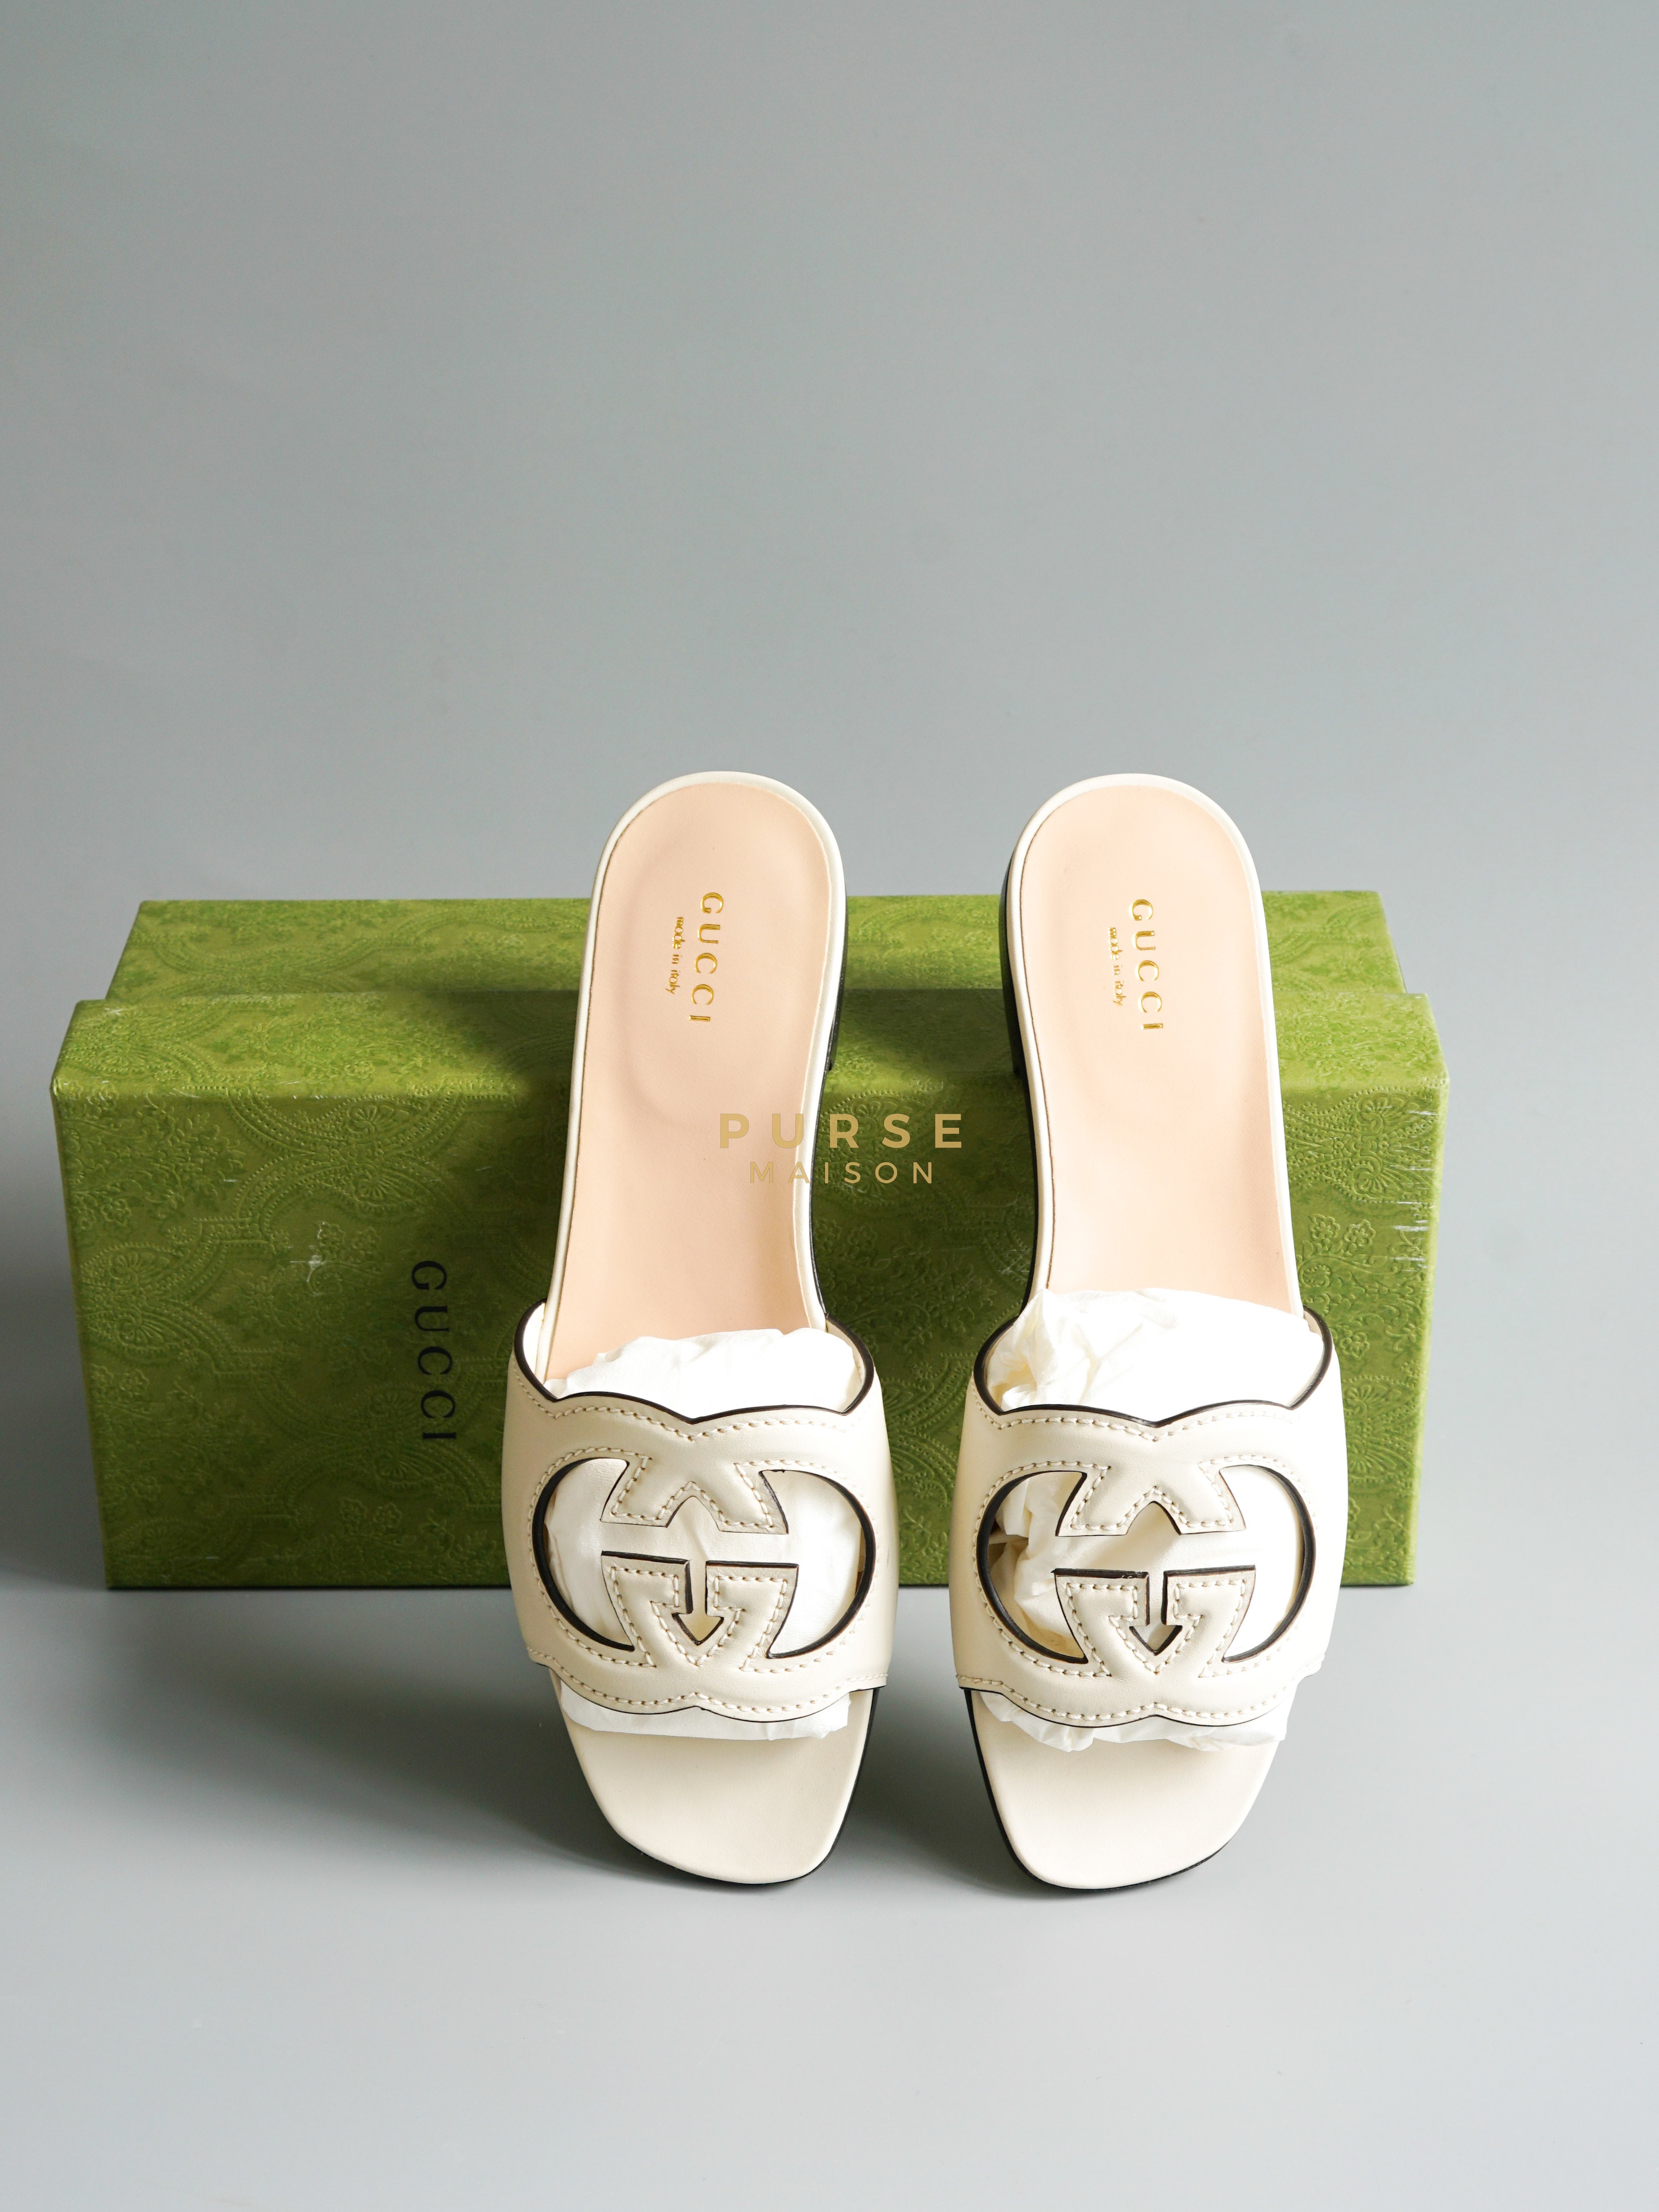 Interlocking G Cut-Out Slide Sandals (Size 37.5EU, 24.5cm) | Purse Maison Luxury Bags Shop